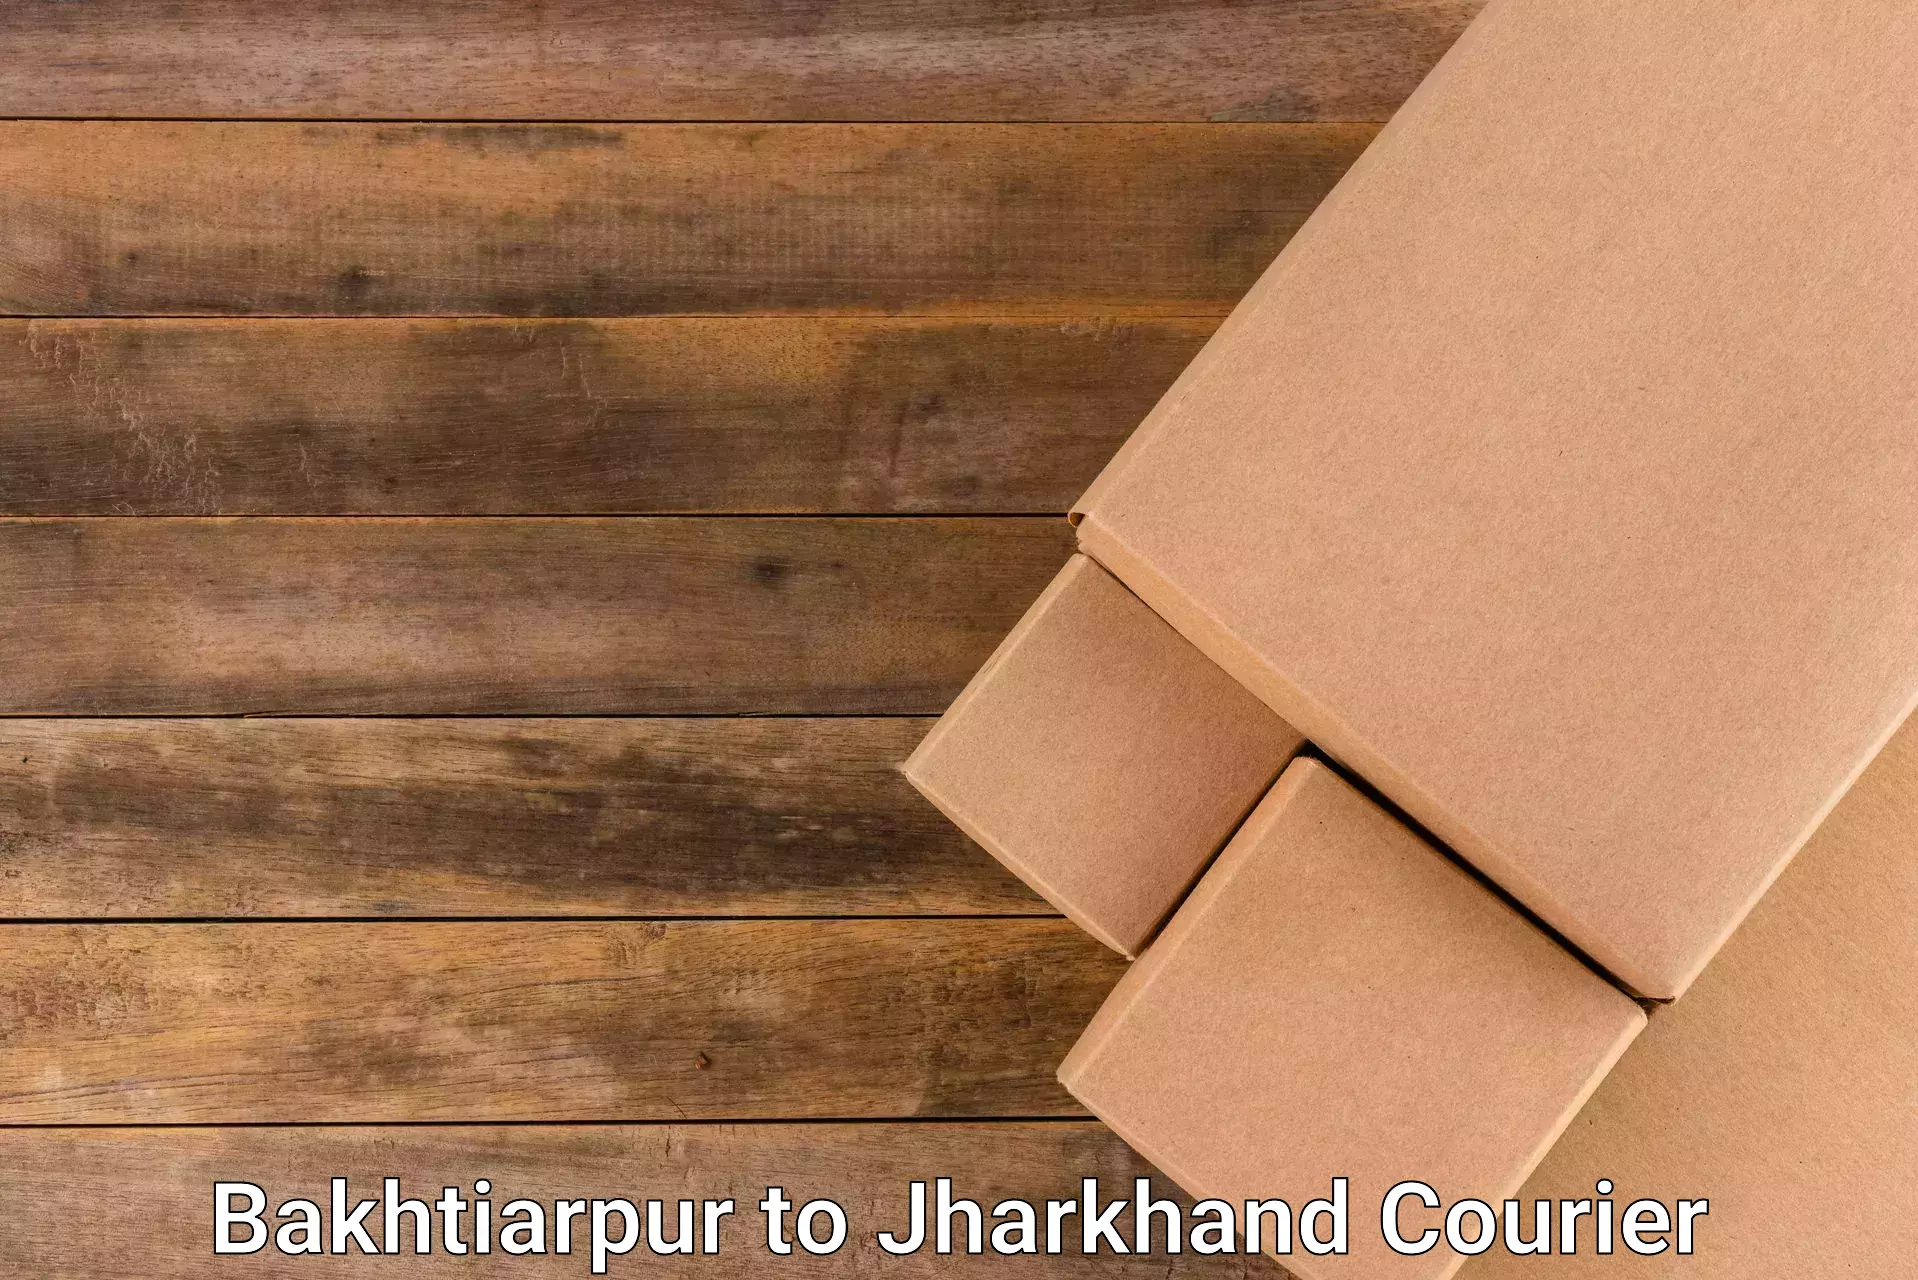 High-capacity parcel service Bakhtiarpur to Godabar Chatra